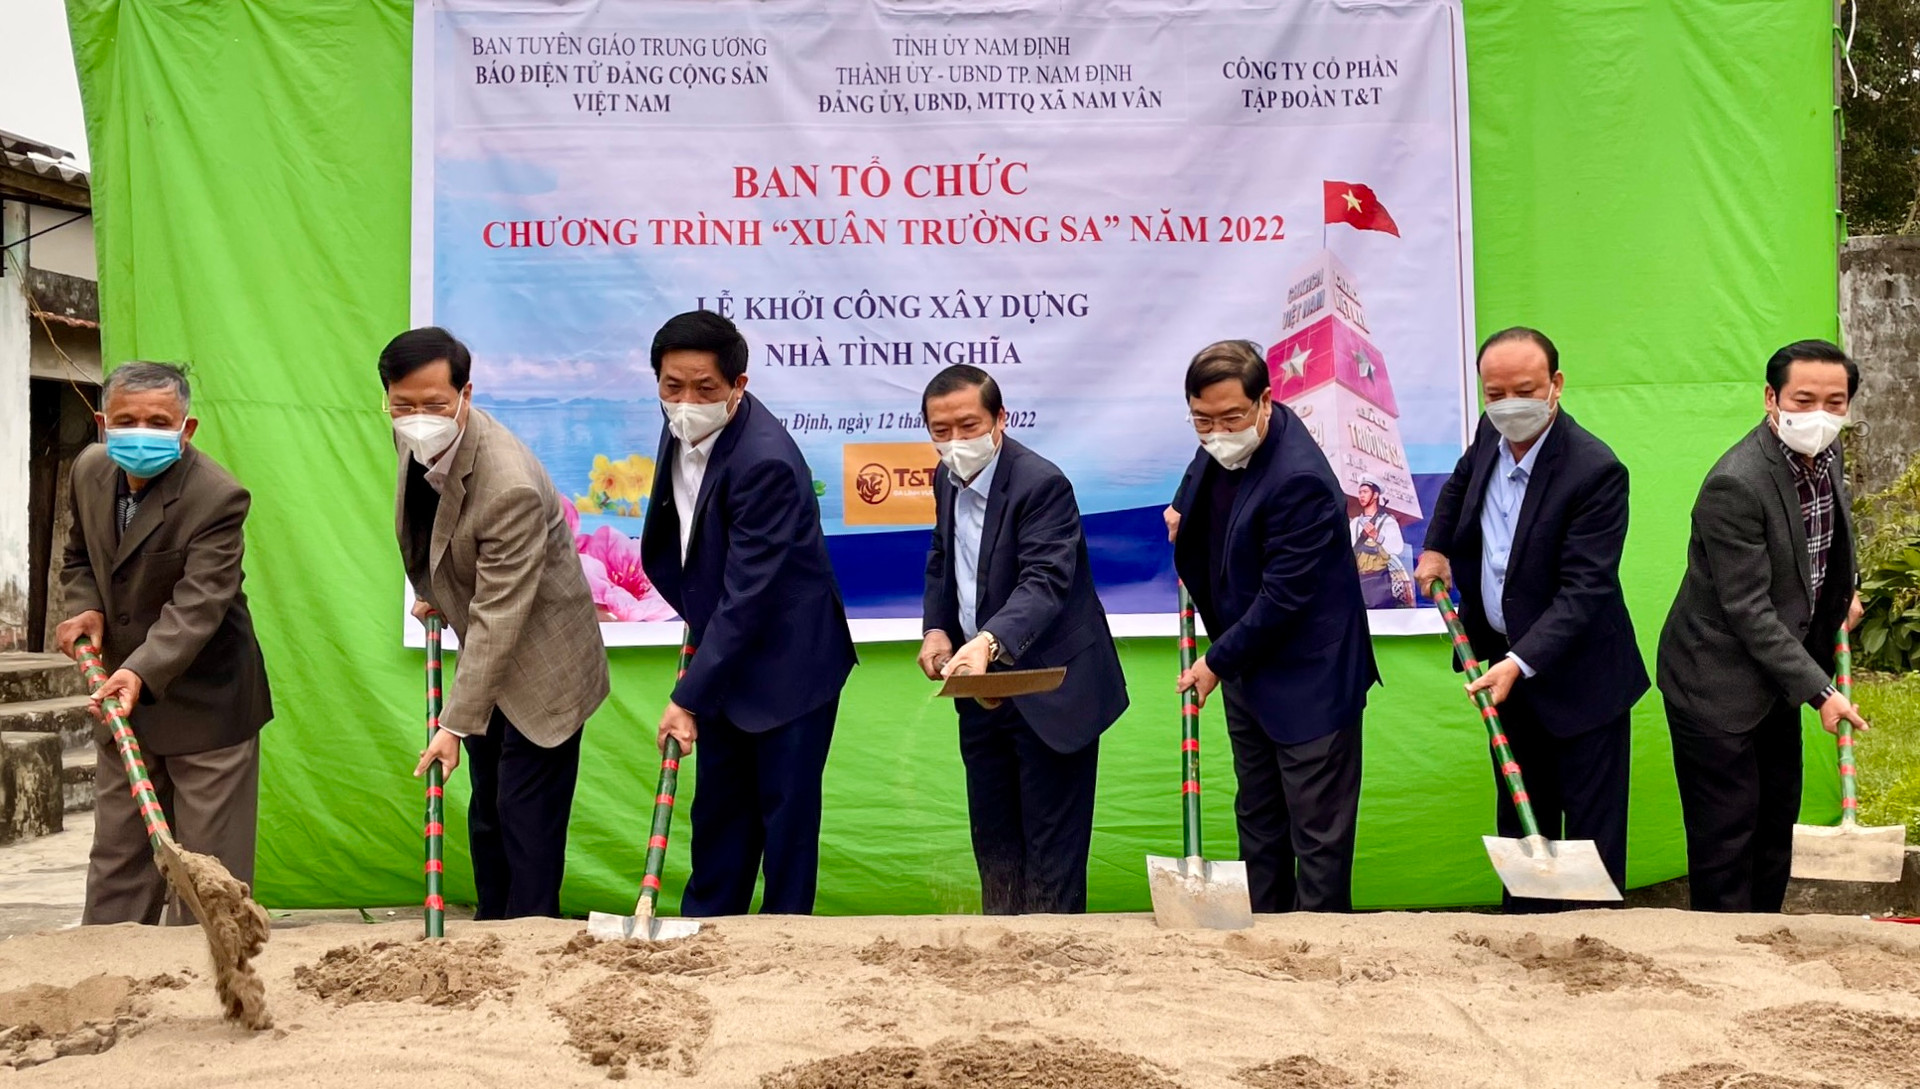 Ông Nguyễn Tất Thắng, Phó TGĐ T&T Group cùng lãnh đạo Ban Tuyên giáo Trung ương, Lãnh đạo Tỉnh Nam Định thực hiện nghi thức khởi công xây dựng nhà Tình Nghĩa.